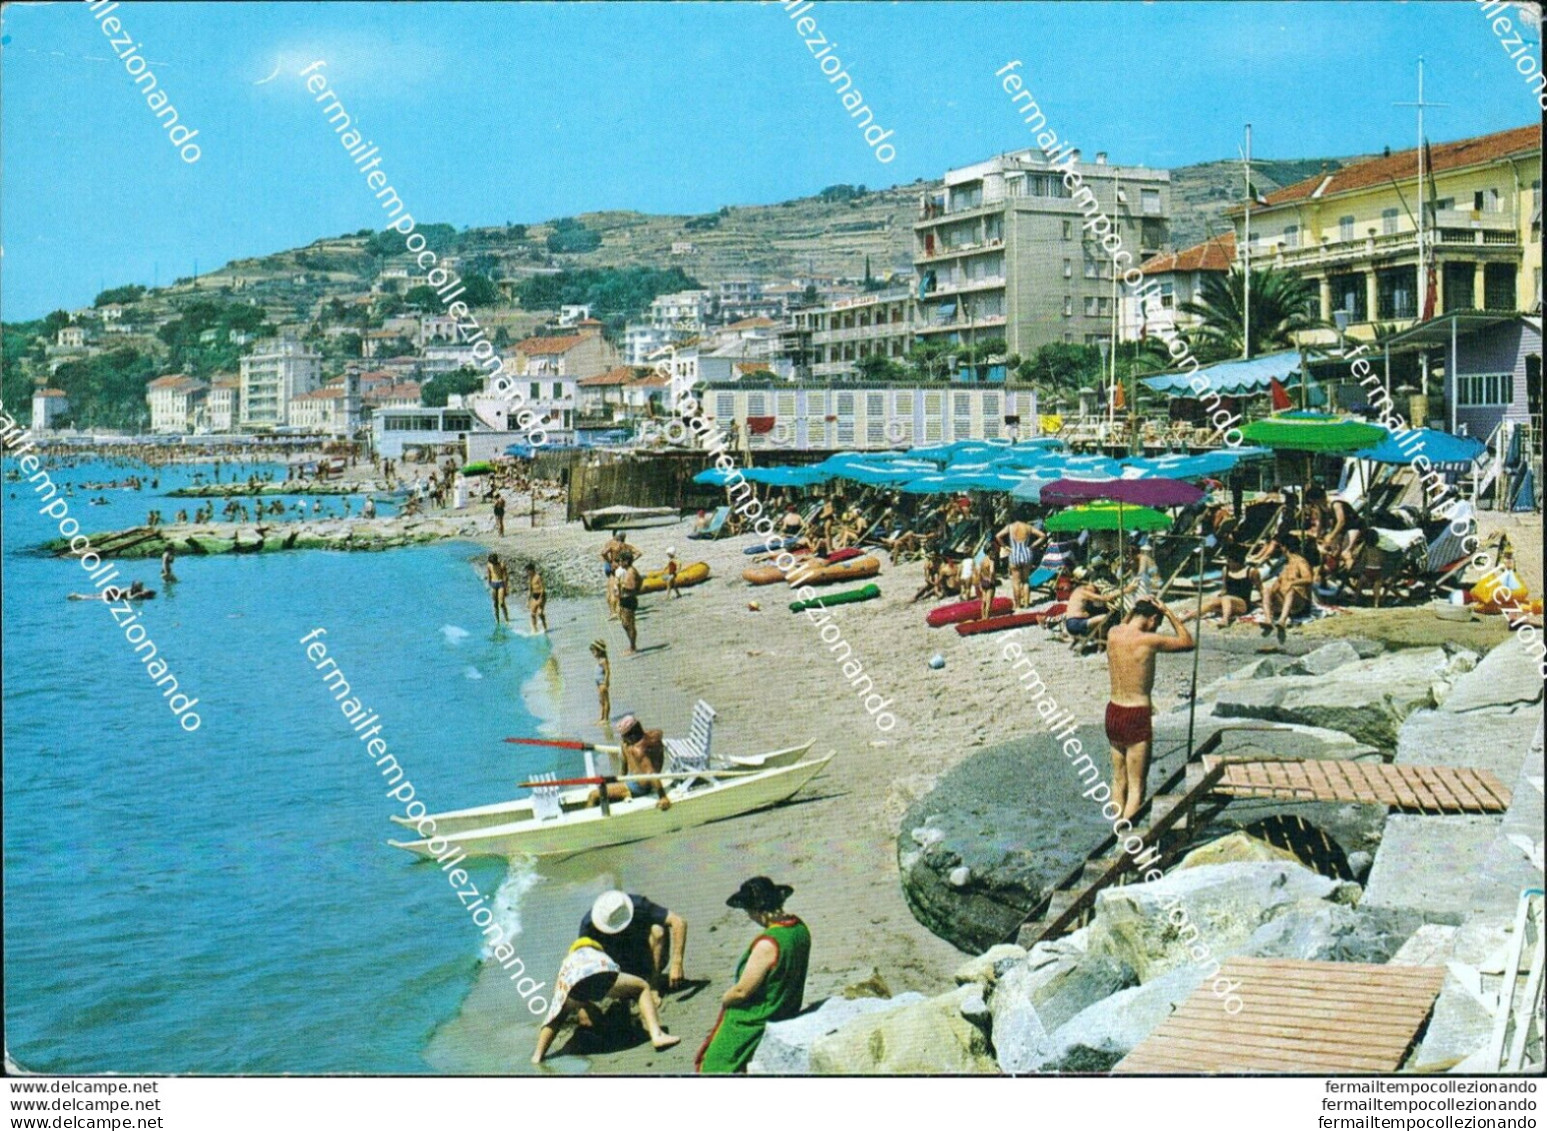 Br381 Cartolina Arma Di Taggia La Spiaggia Provincia Di Imperia Liguria - Imperia